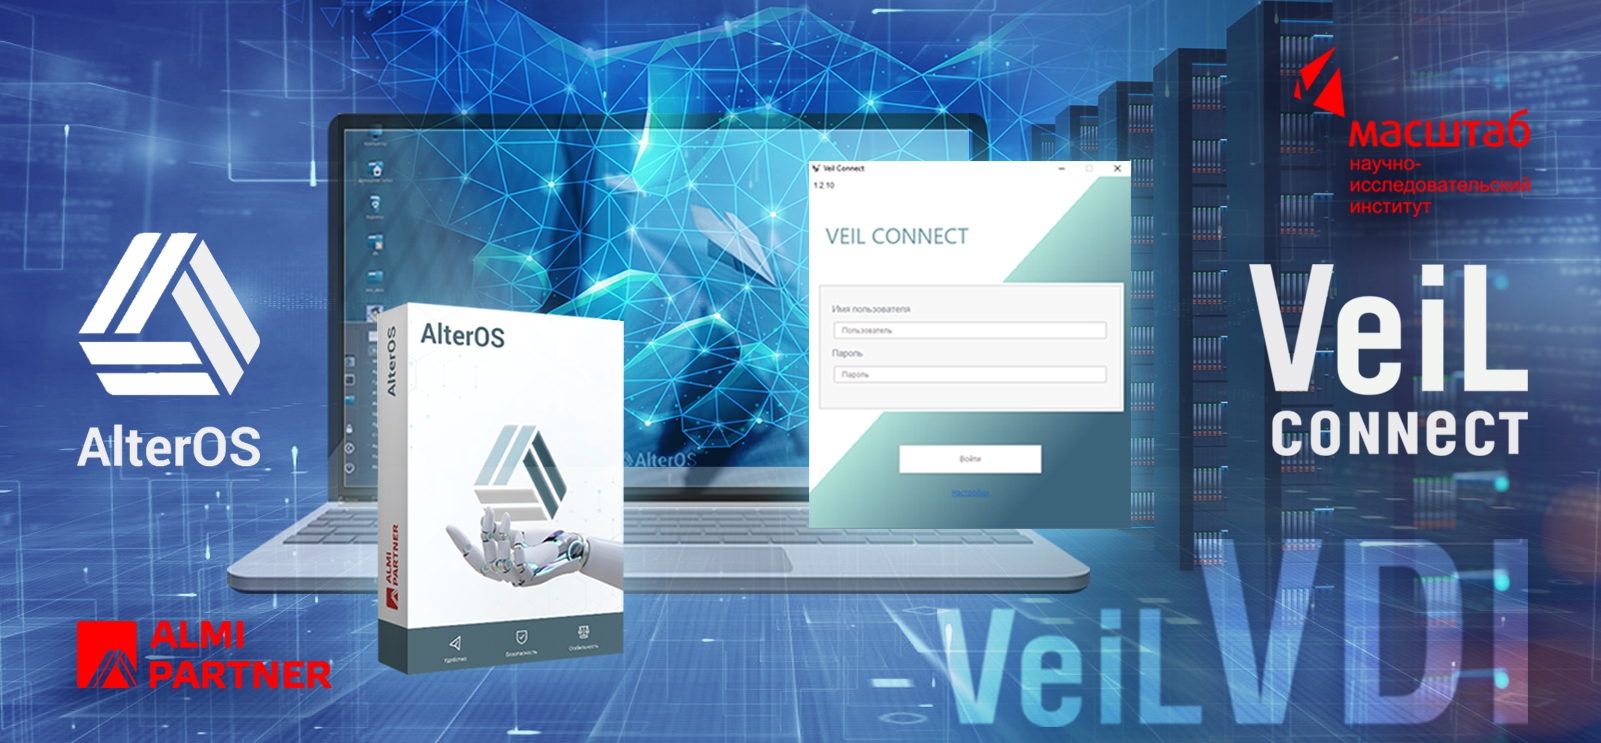 Подтверждена совместимость платформы виртуализации рабочих столов VeiL VDI с отечественной операционной системой AlterOS